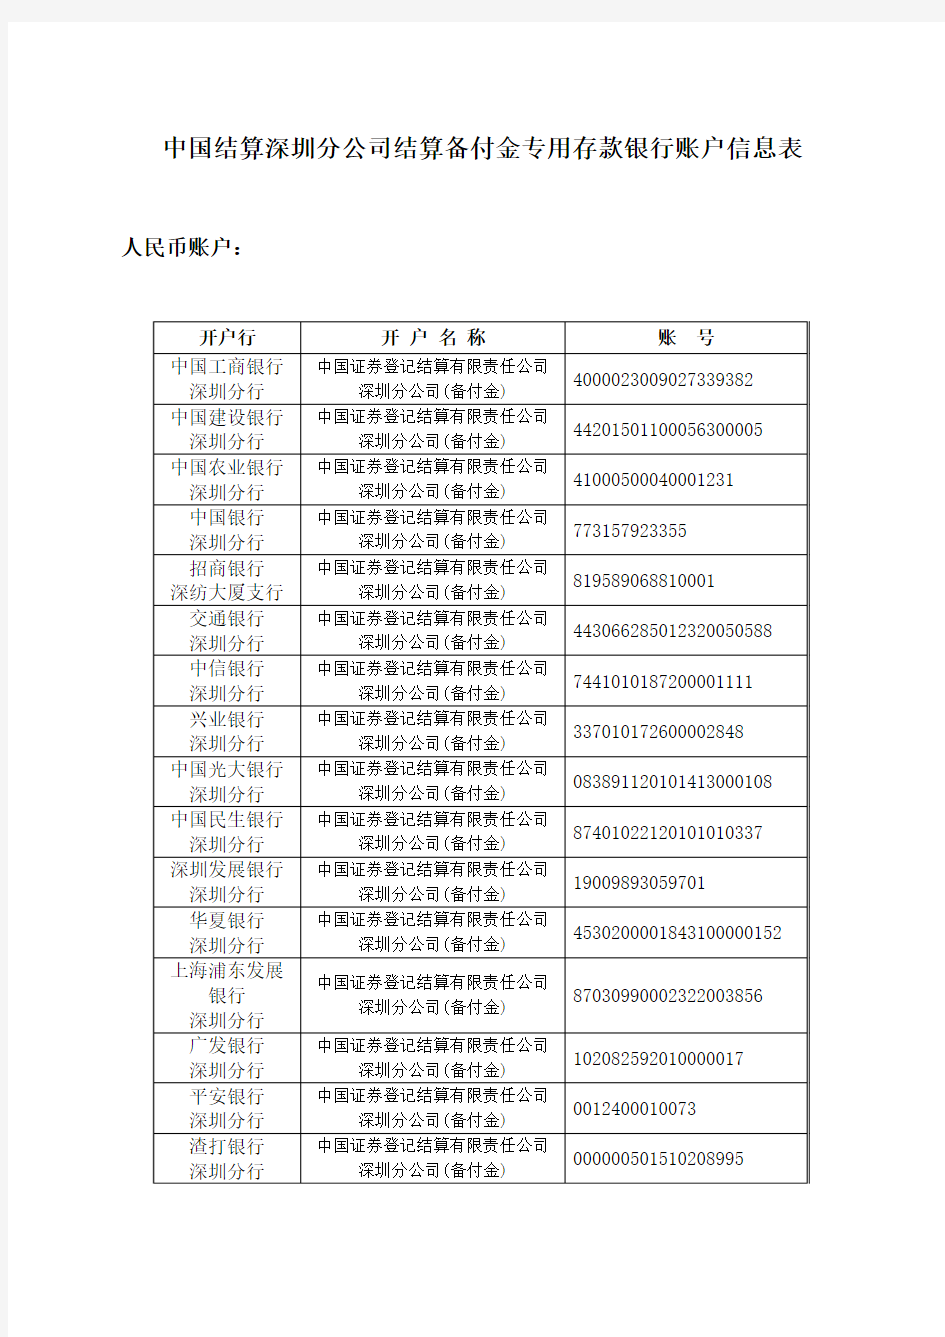 中国结算深圳分公司结算备付金专用存款银行账户信息表